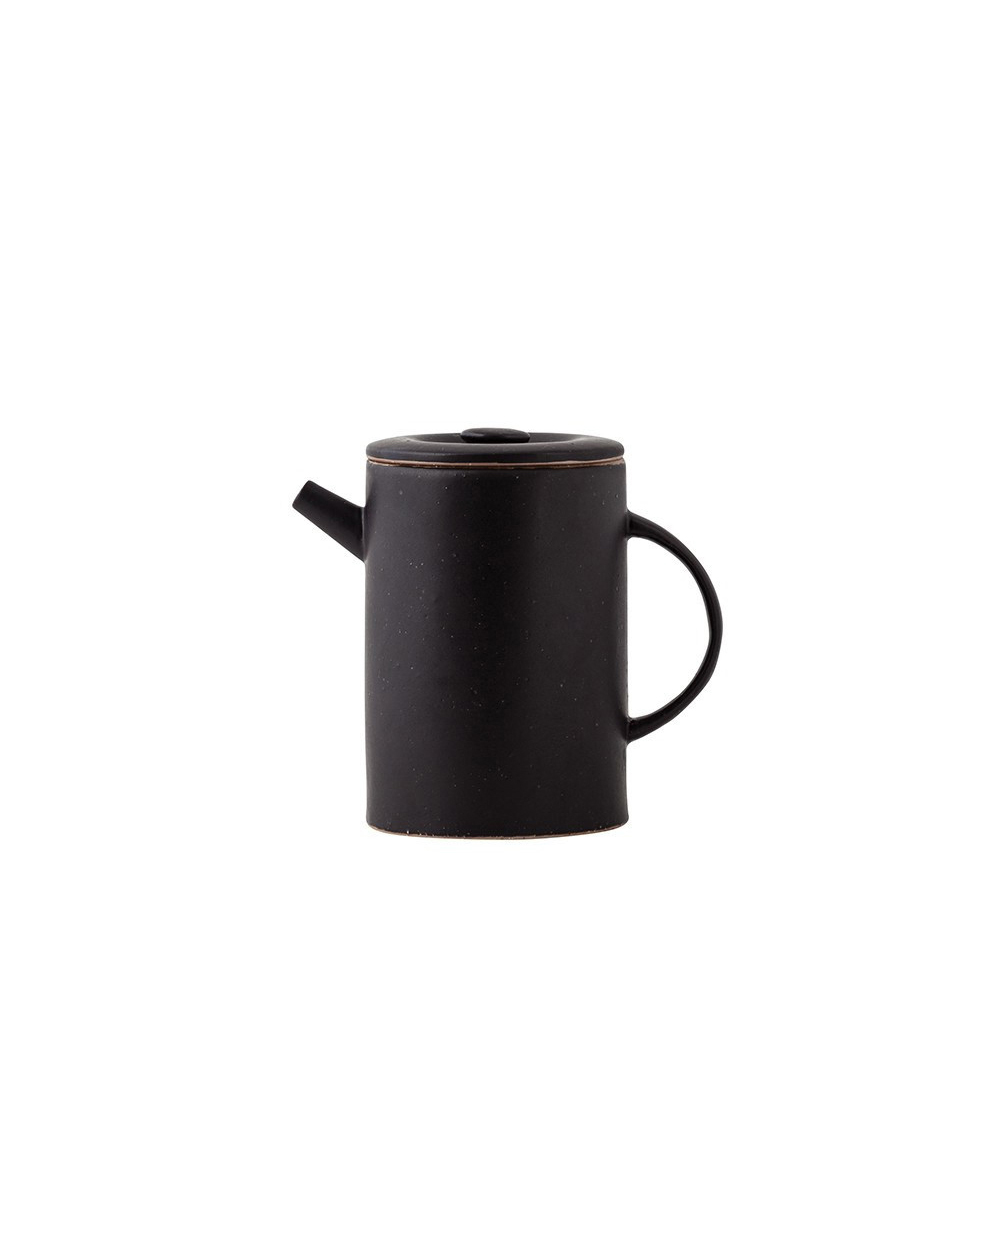 General Eclectic teapot, $49.99 from Shut The Front Door